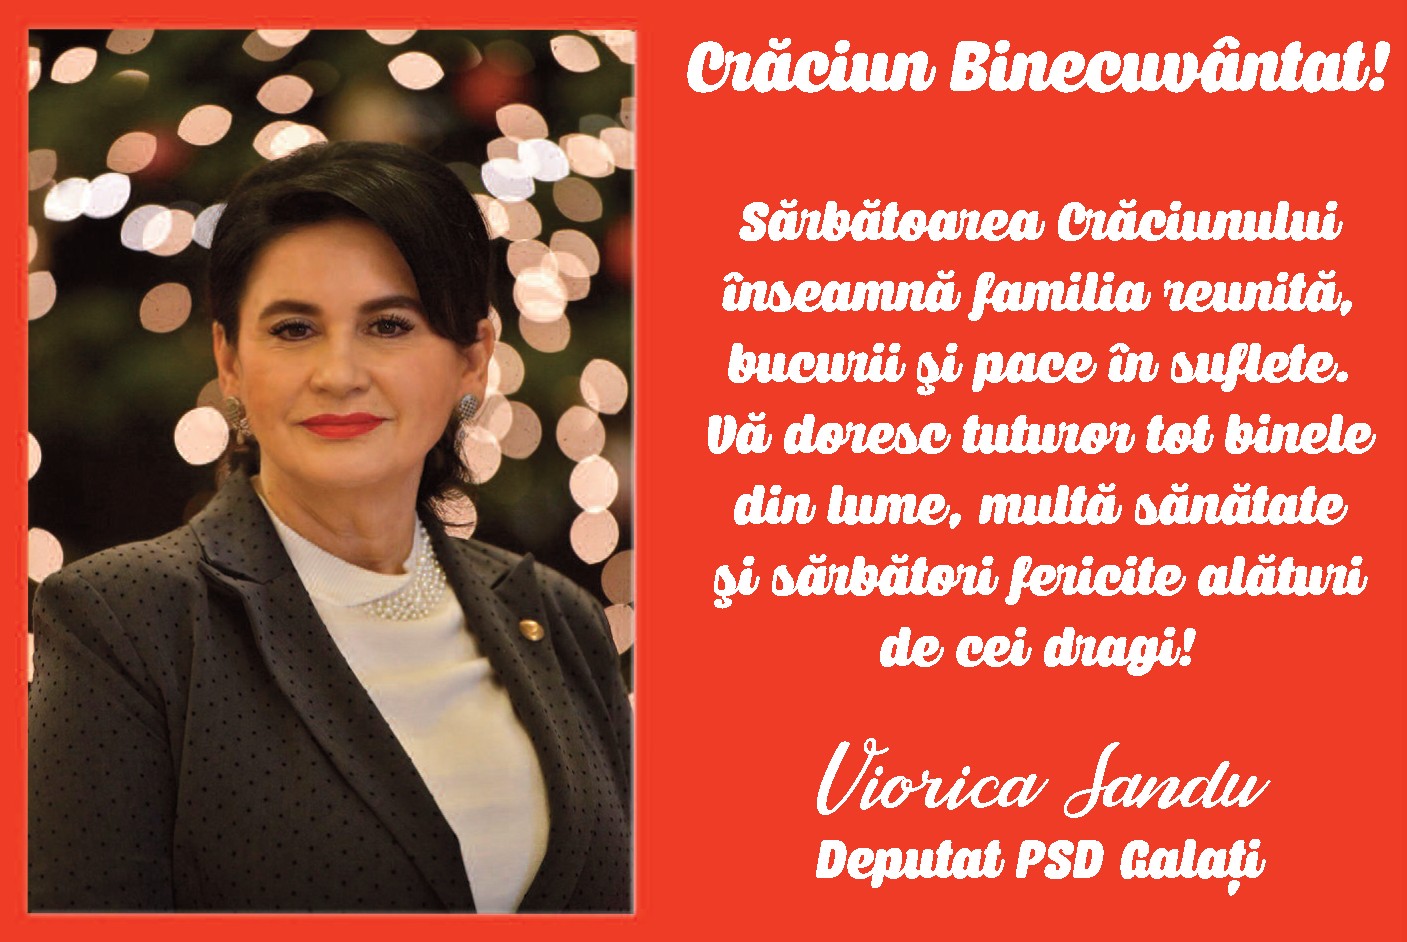 Viorica Sandu, deputat PSD Galaţi: Crăciun Binecuvântat!